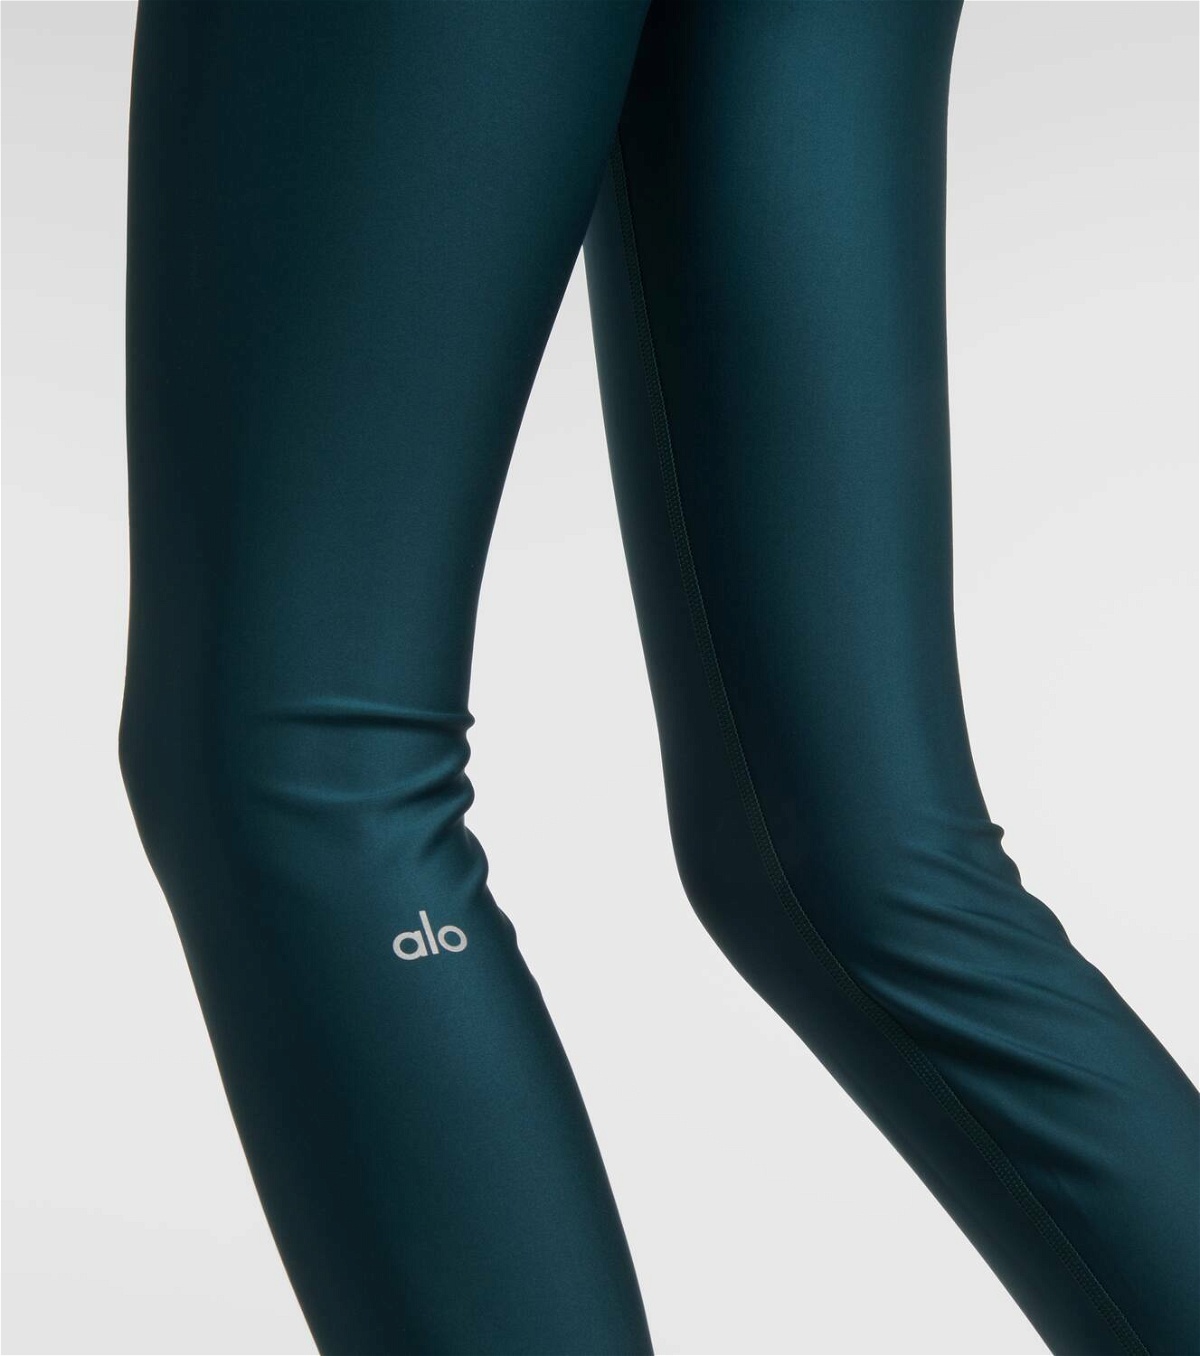 ALO Yoga, Pants & Jumpsuits, Brand New Alo Yoga Moto Leggings